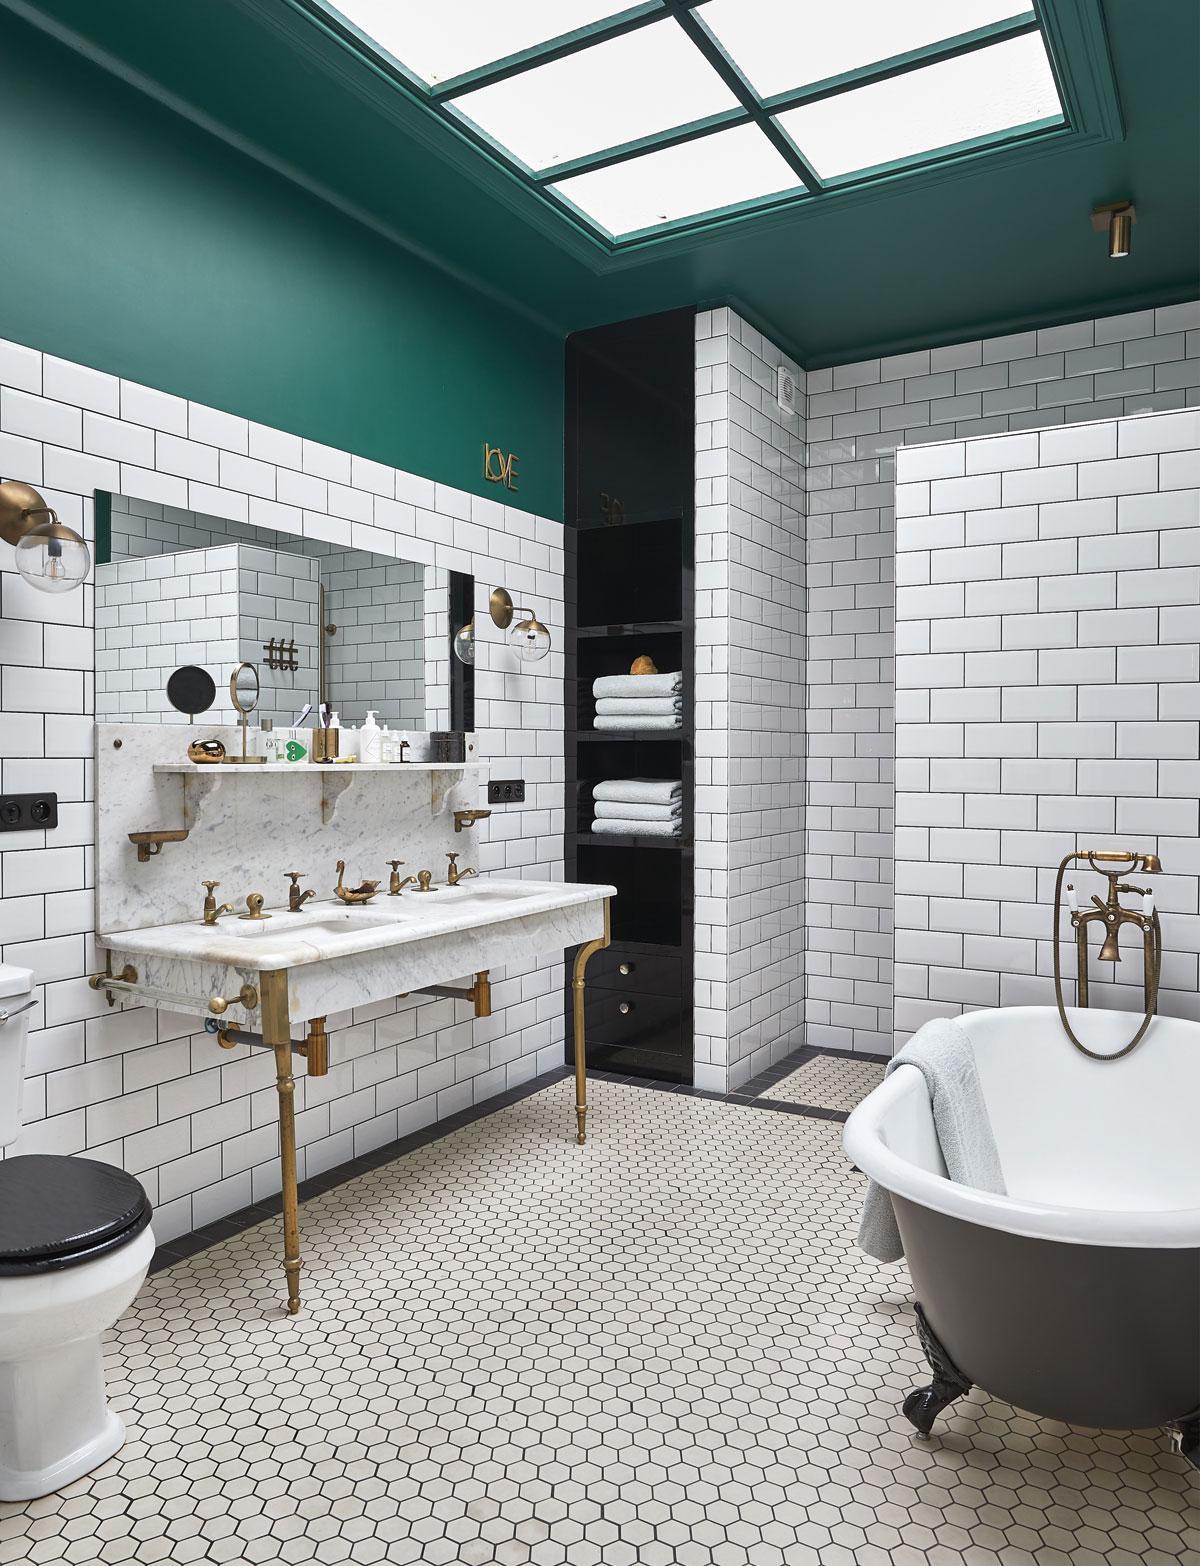 De nieuwe badkamer kreeg een vintage look met een combinatie van metrotegels van Carobati, een tweedehands wastafel en een alleenstaande badkuip van het Engelse The Iron Cast Bath Company.